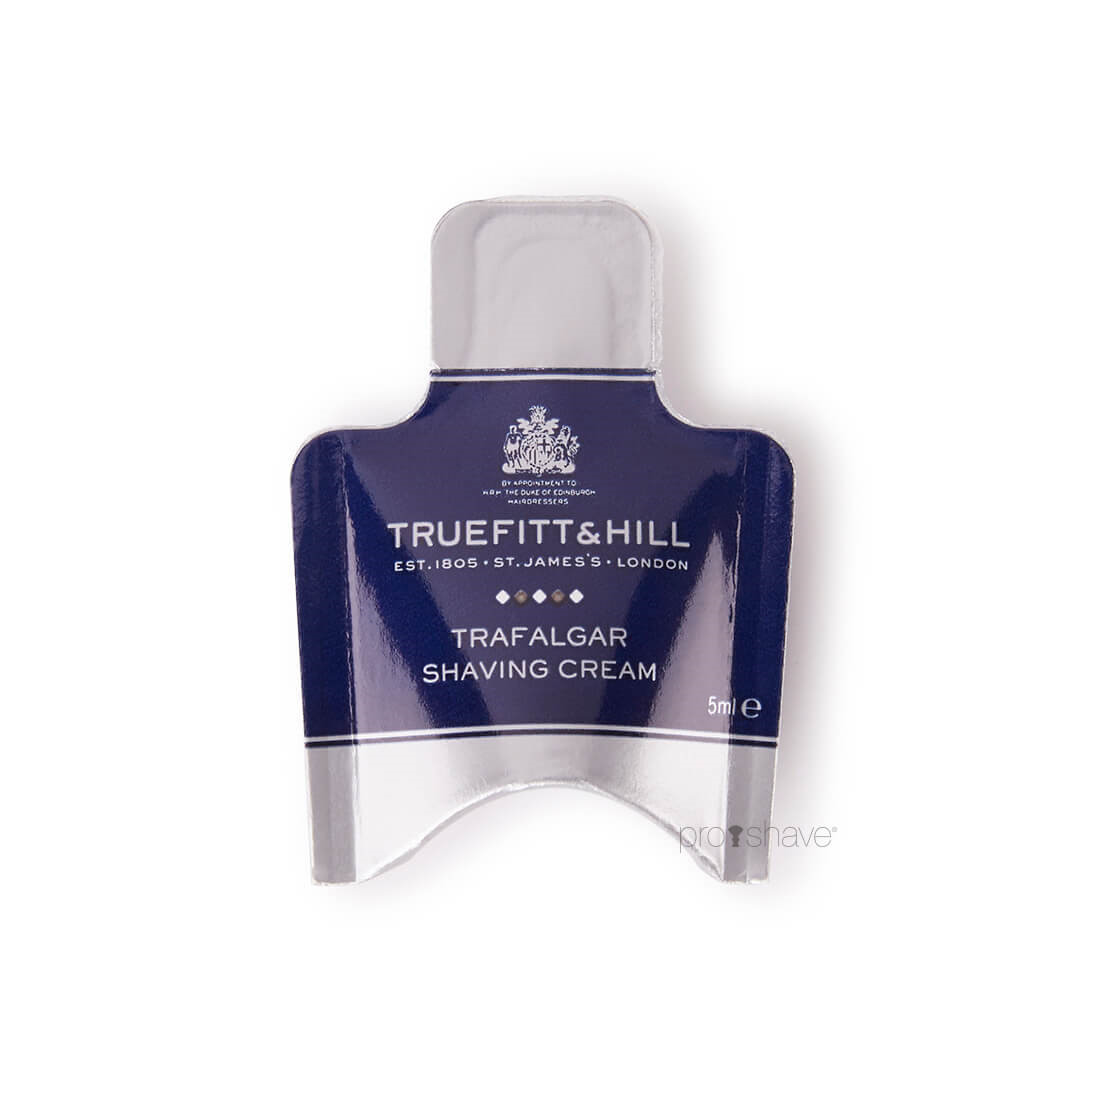 11: Truefitt & Hill Trafalgar Shaving Cream Sample Pack, 5 ml.